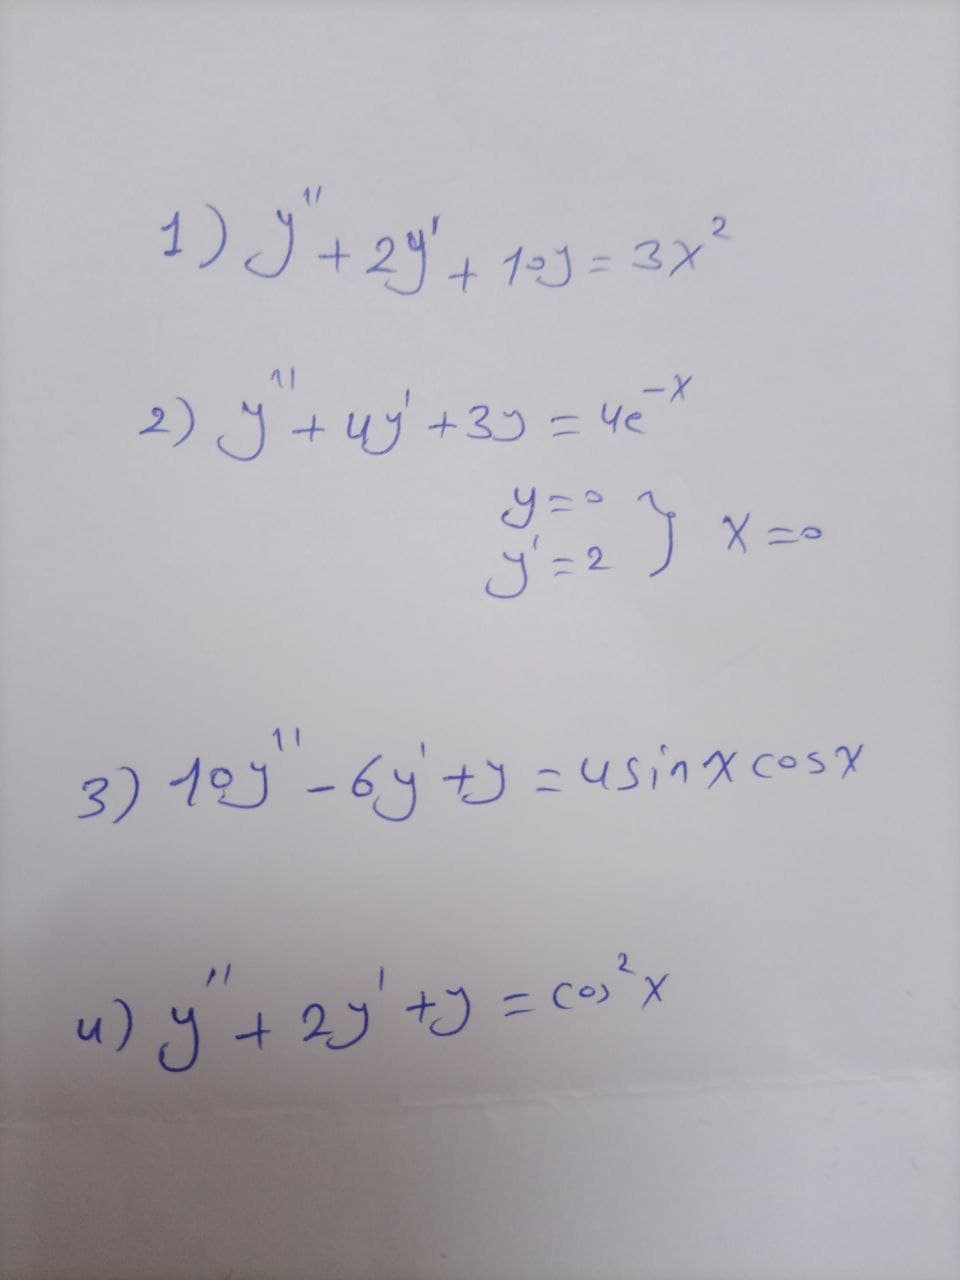 2 × 3 = 13 , 29 +"ل ( 1
+ 3x²
-
2) Jug 433 = 4
2 = ال
و
co = 3+ رو + (
X ==
3) 19 - 6 + = usinces